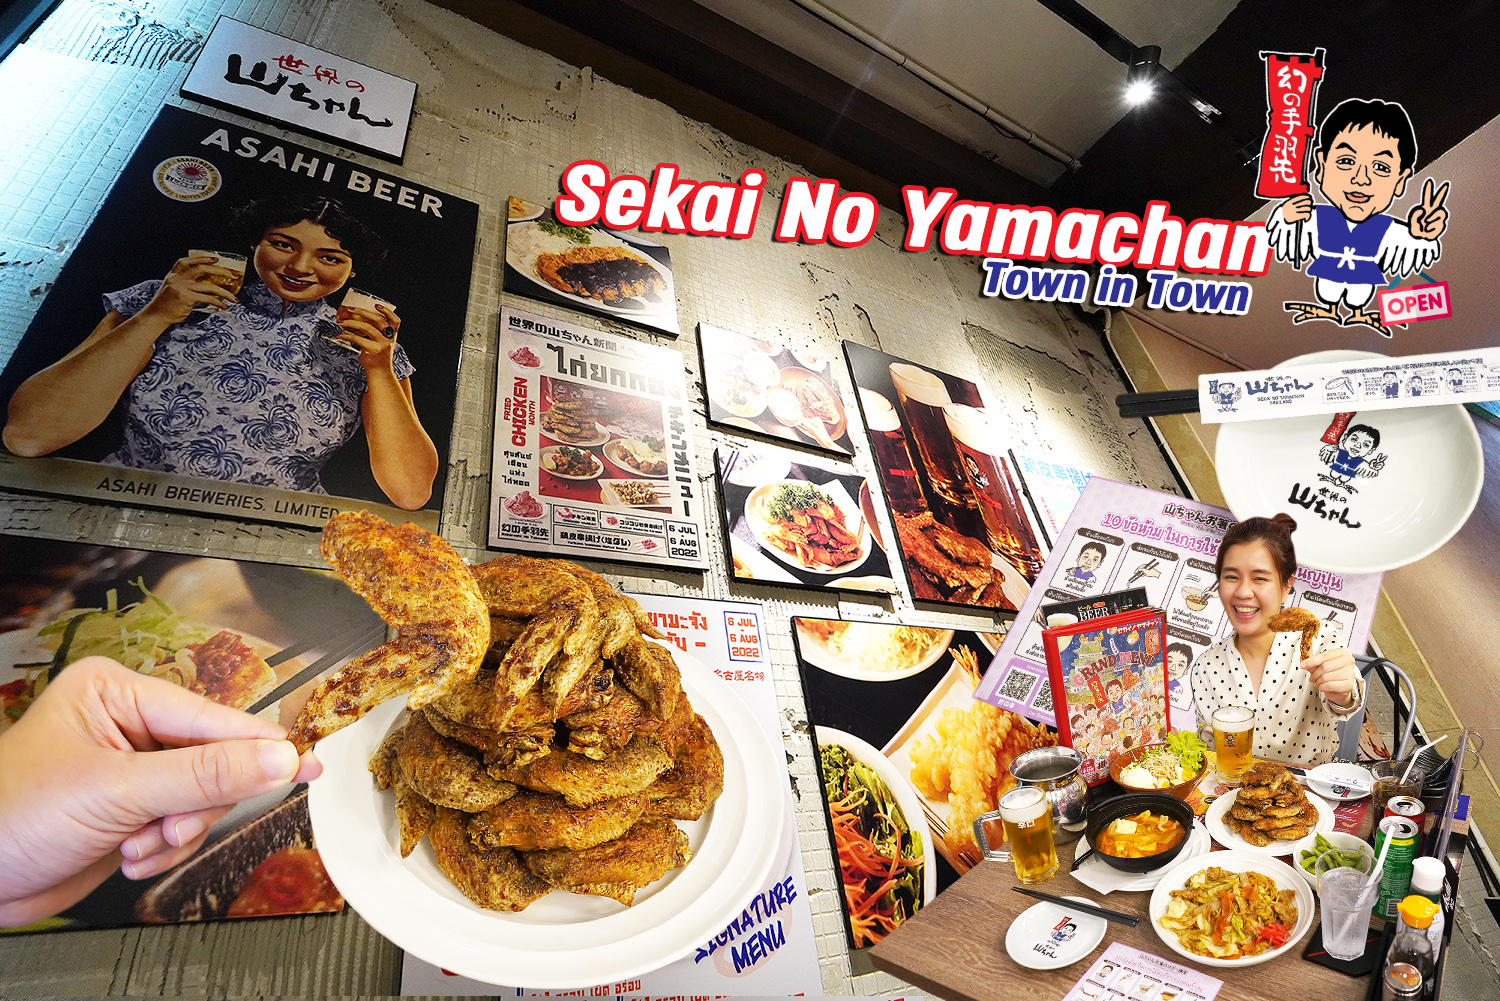 เปิดแล้วใกล้บ้าน (ผม) Sekai no Yamachan @Town in Town ปีกไก่ทอดต้นตำรับจากนาโกย่า เผ็ด อร่อย ขออีกชิ้น…